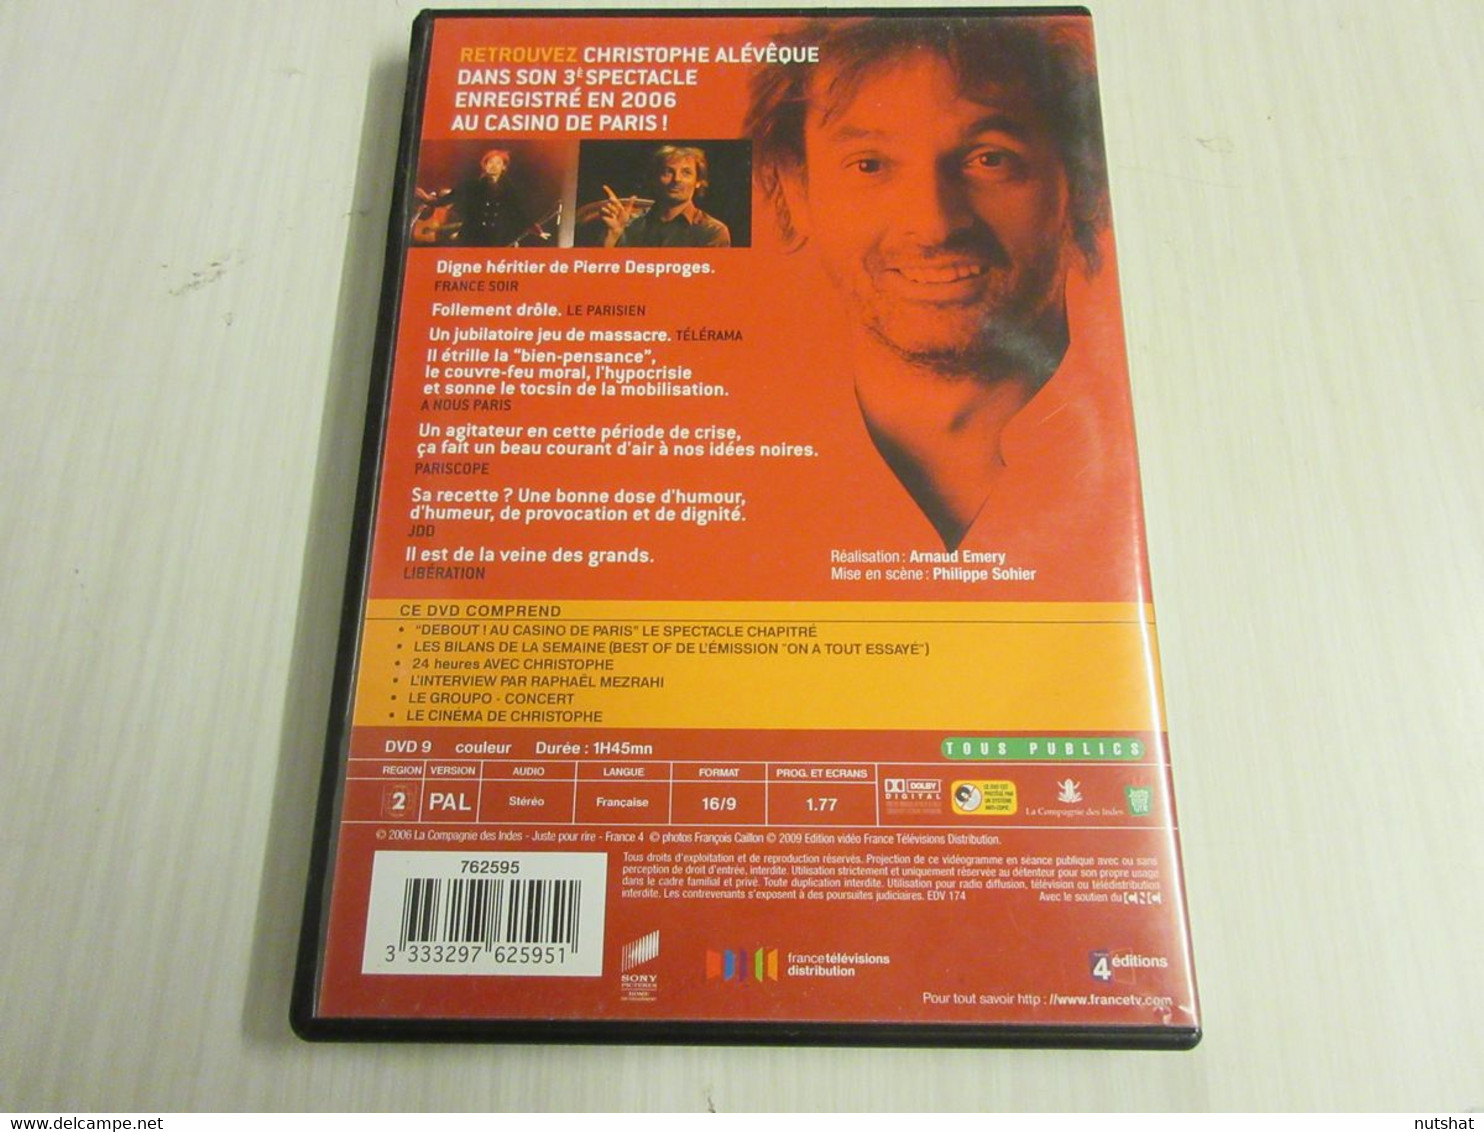 DVD SPECTACLE ALEVEQUE DEBOUT Au CASINO De PARIS 2006 105mn + Bonus - Concert Et Musique